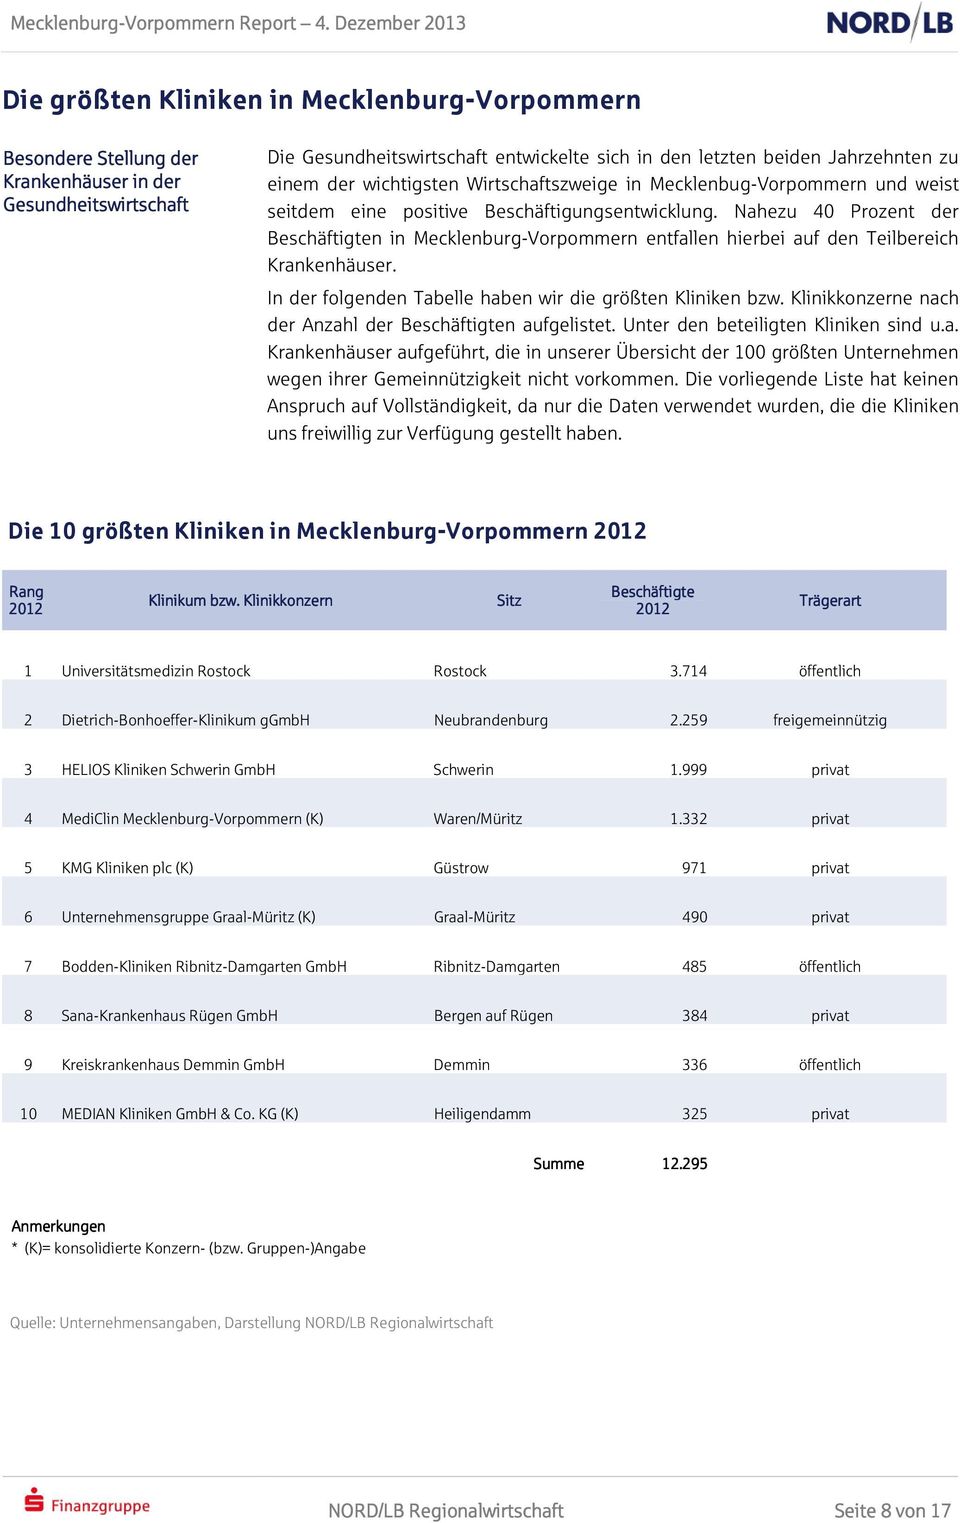 Nahezu 40 Prozent der Beschäftigten in Mecklenburg-Vorpommern entfallen hierbei auf den Teilbereich Krankenhäuser. In der folgenden Tabelle haben wir die größten Kliniken bzw.